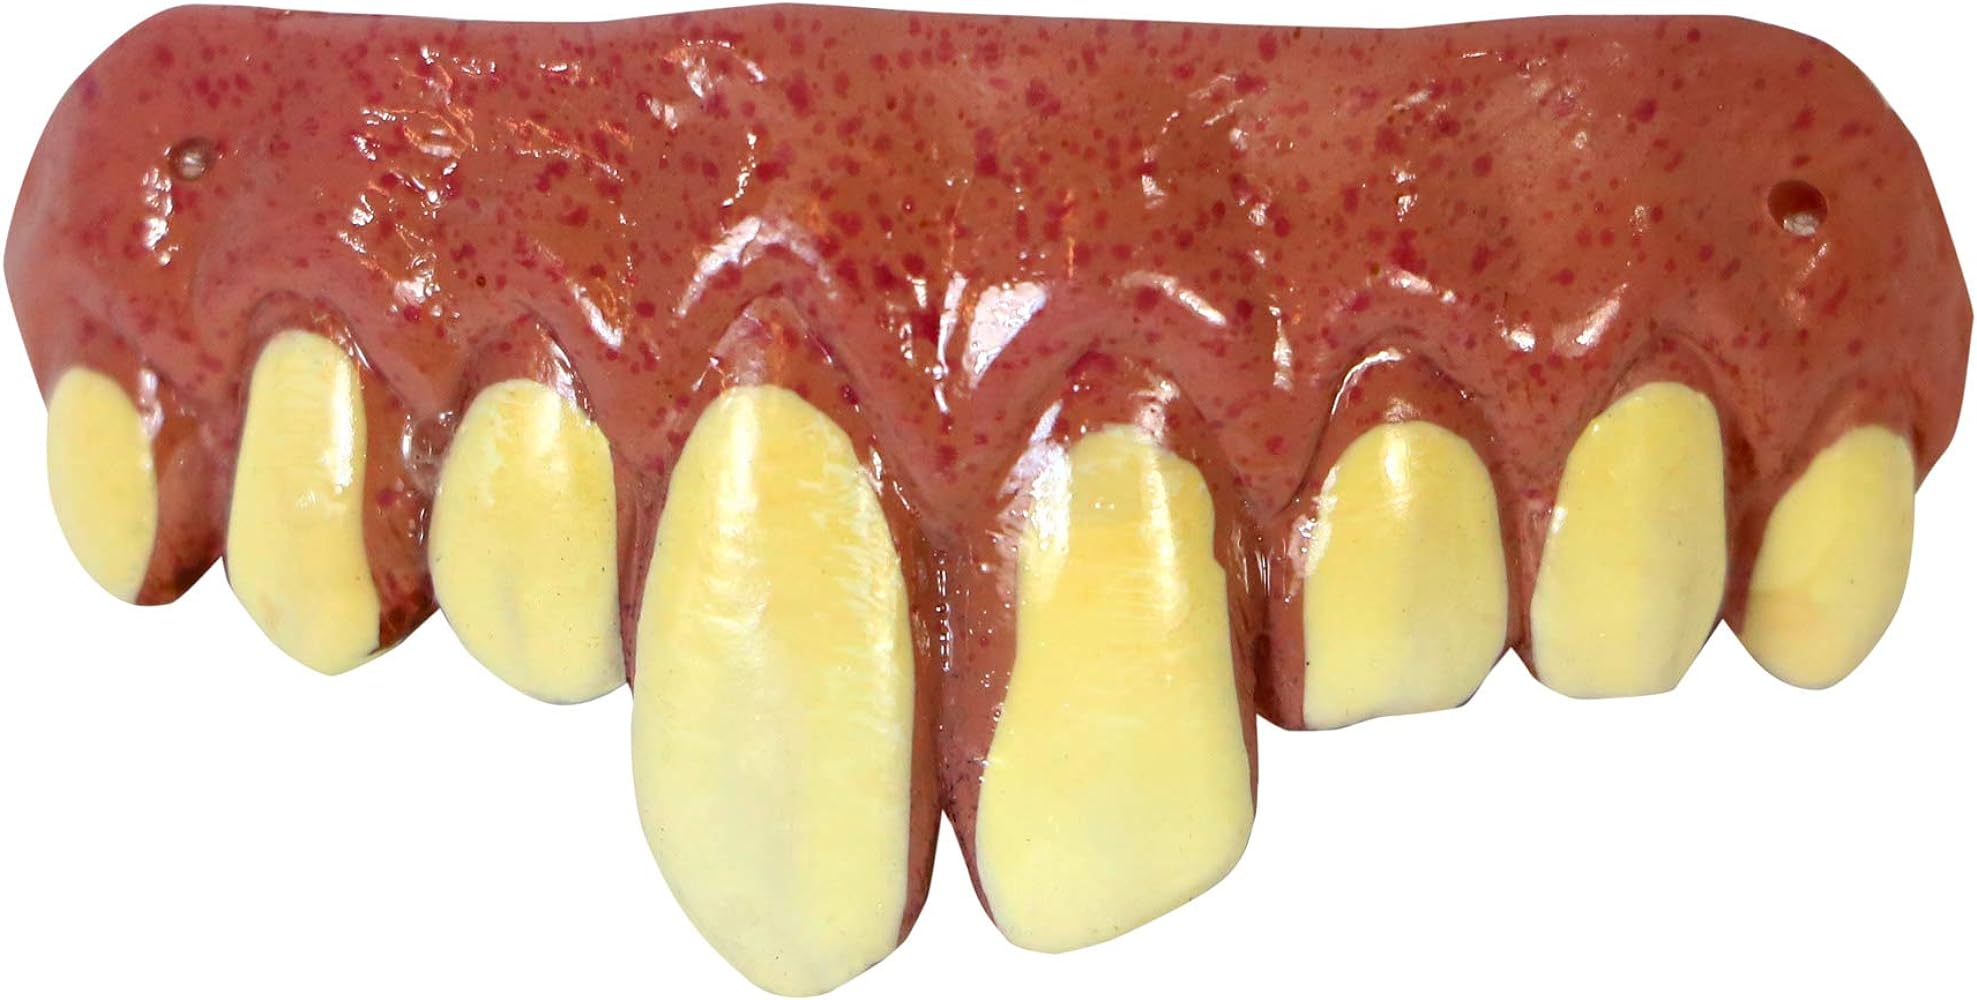 pennywise monster teeth